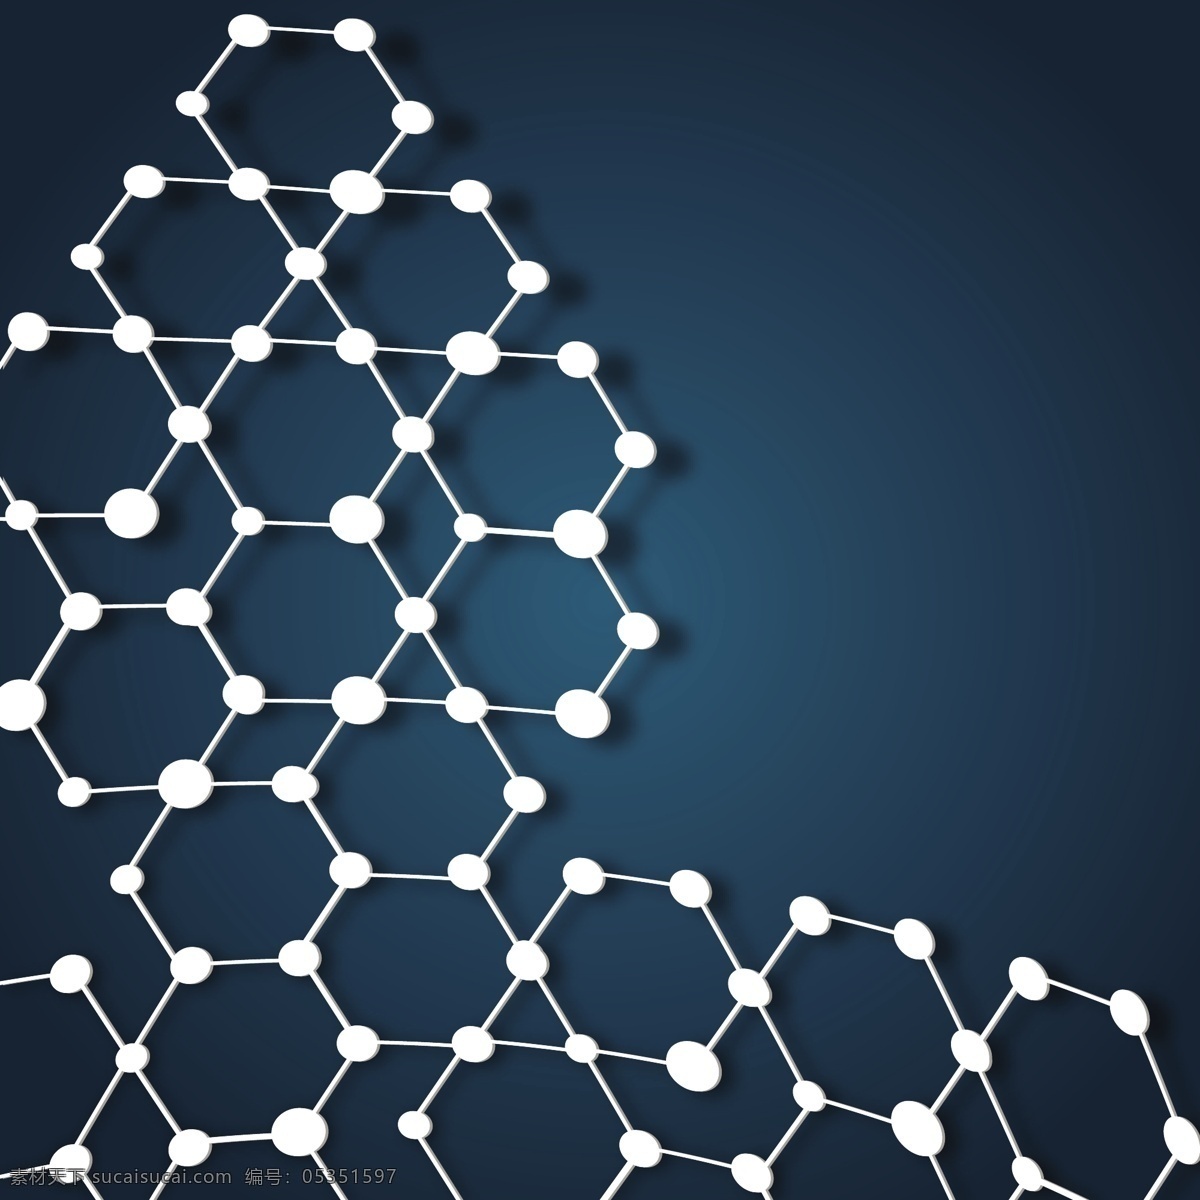 六边形背景 结构式 分子式 科学概念 科学图标 科技图标 化学 物理 办公学习 生活百科 矢量素材 黑色